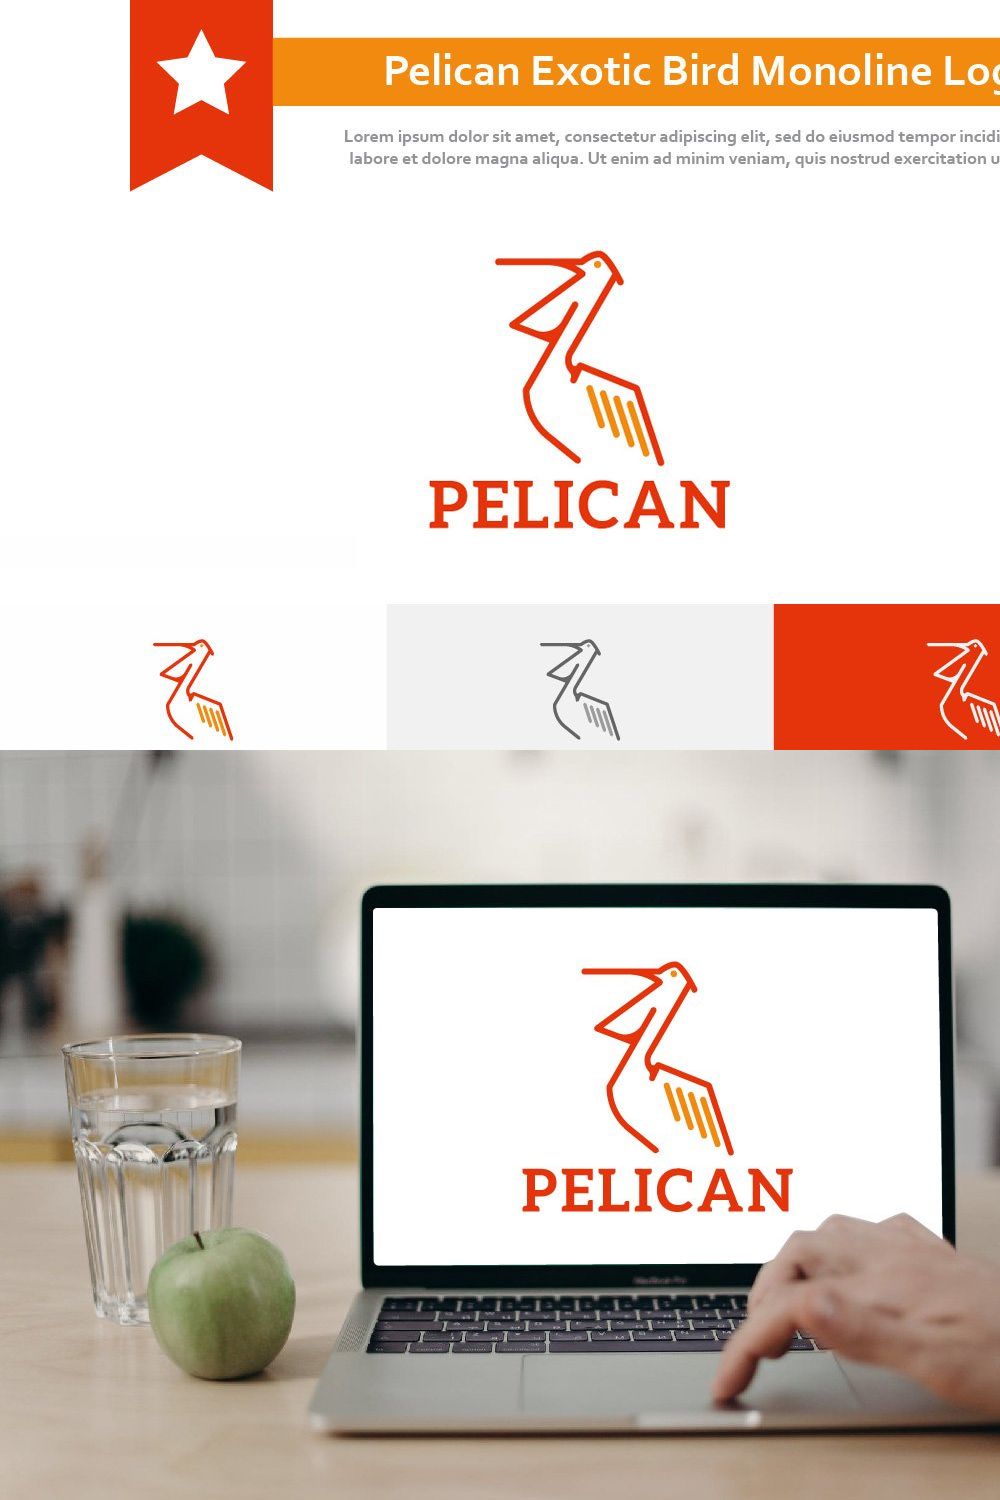 Pelican Open Beak Exotic Bird Logo pinterest preview image.